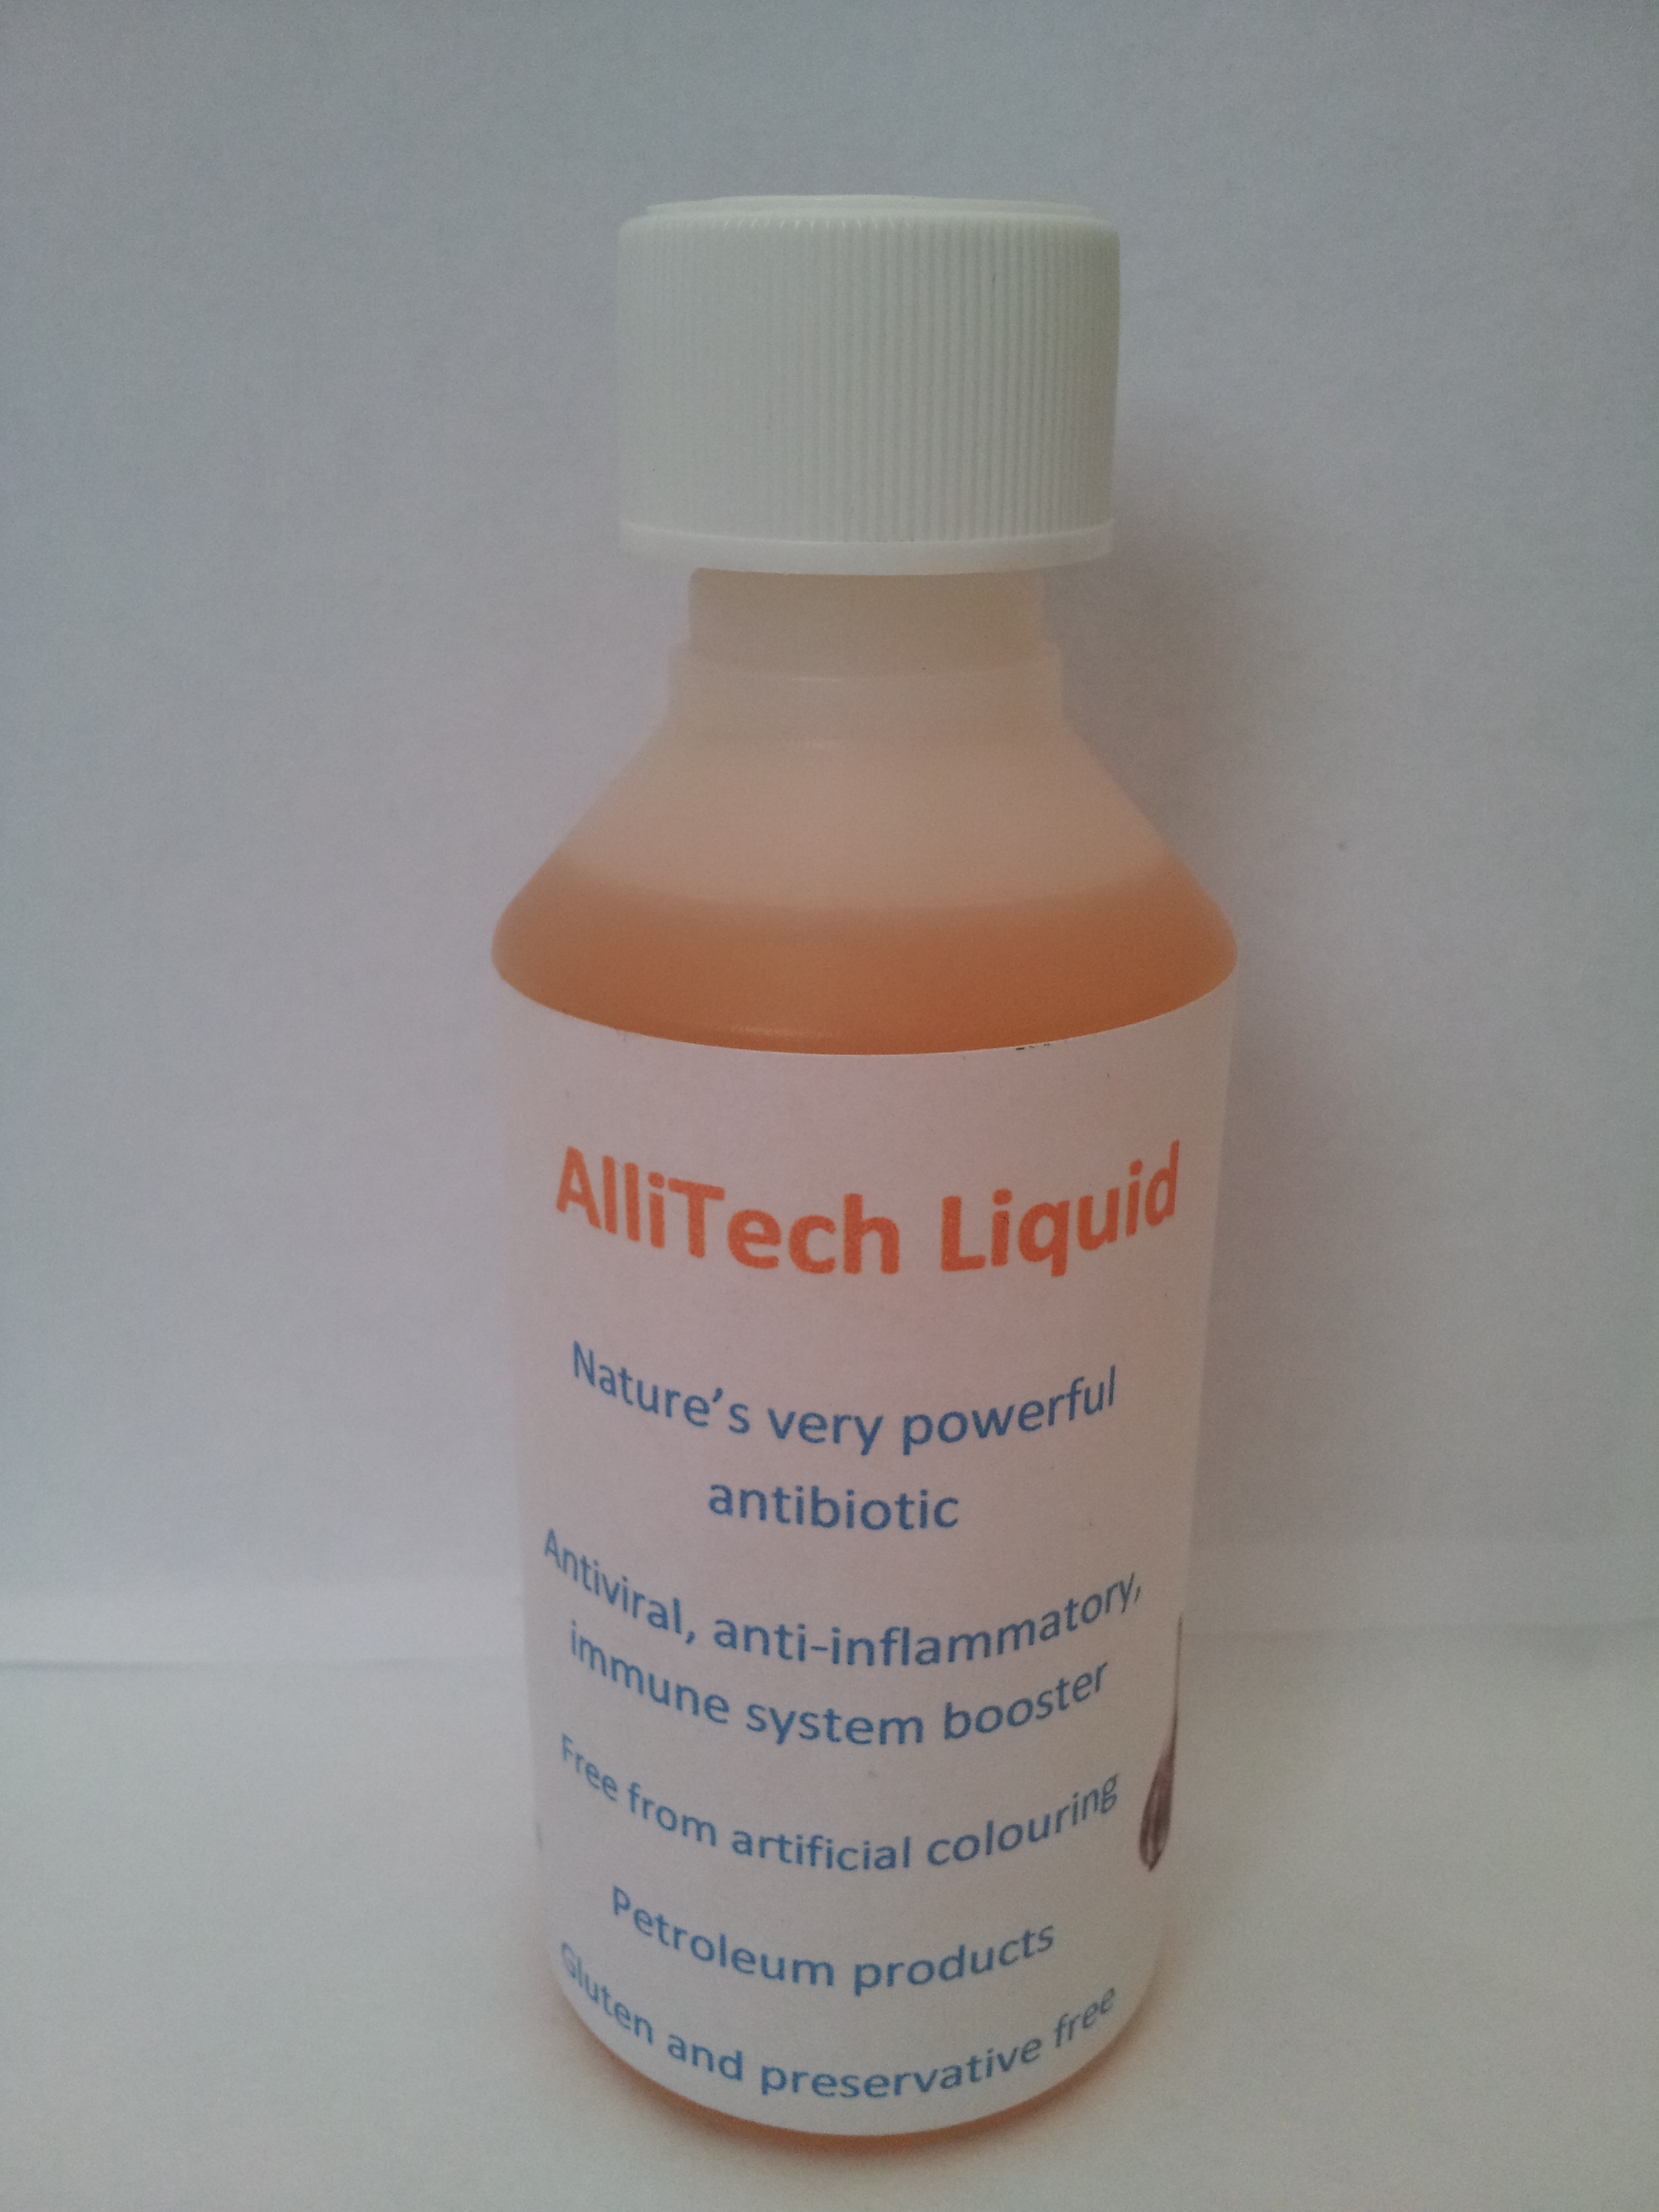 Allitech Liquid